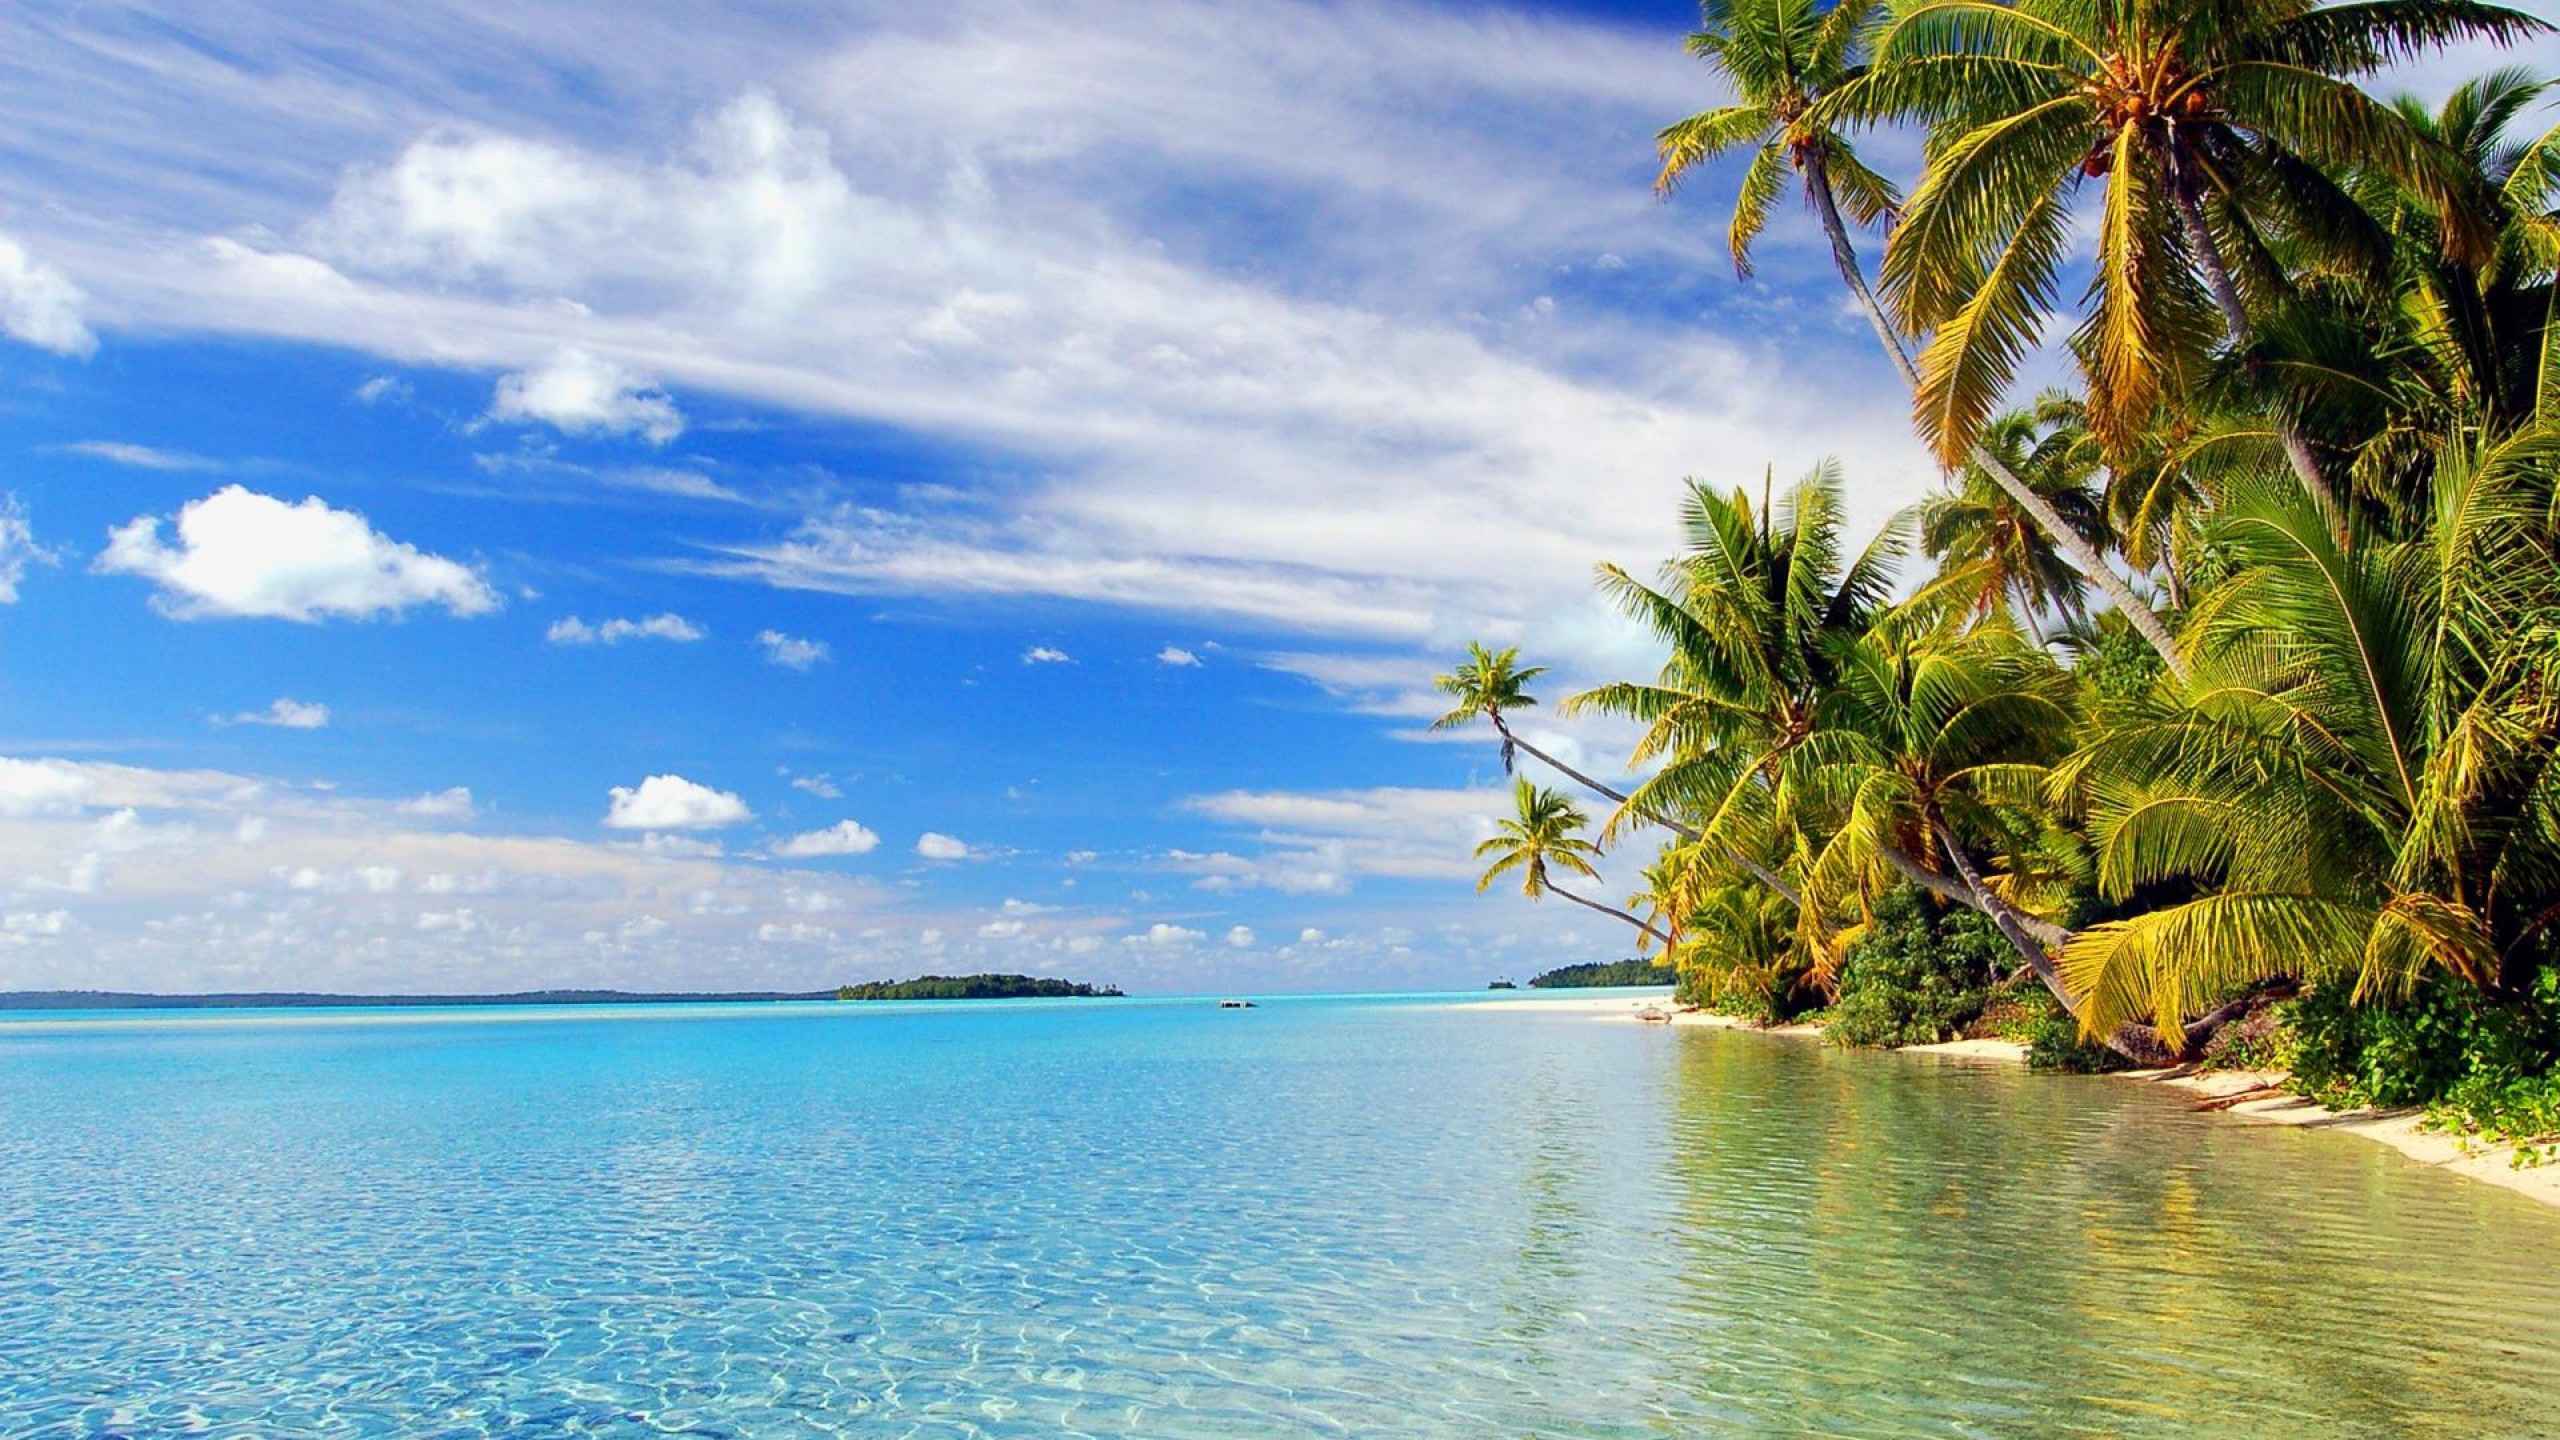 2560x1440 Beautiful Tropical Islands Desktop Wallpaper - WallpaperSafari ...